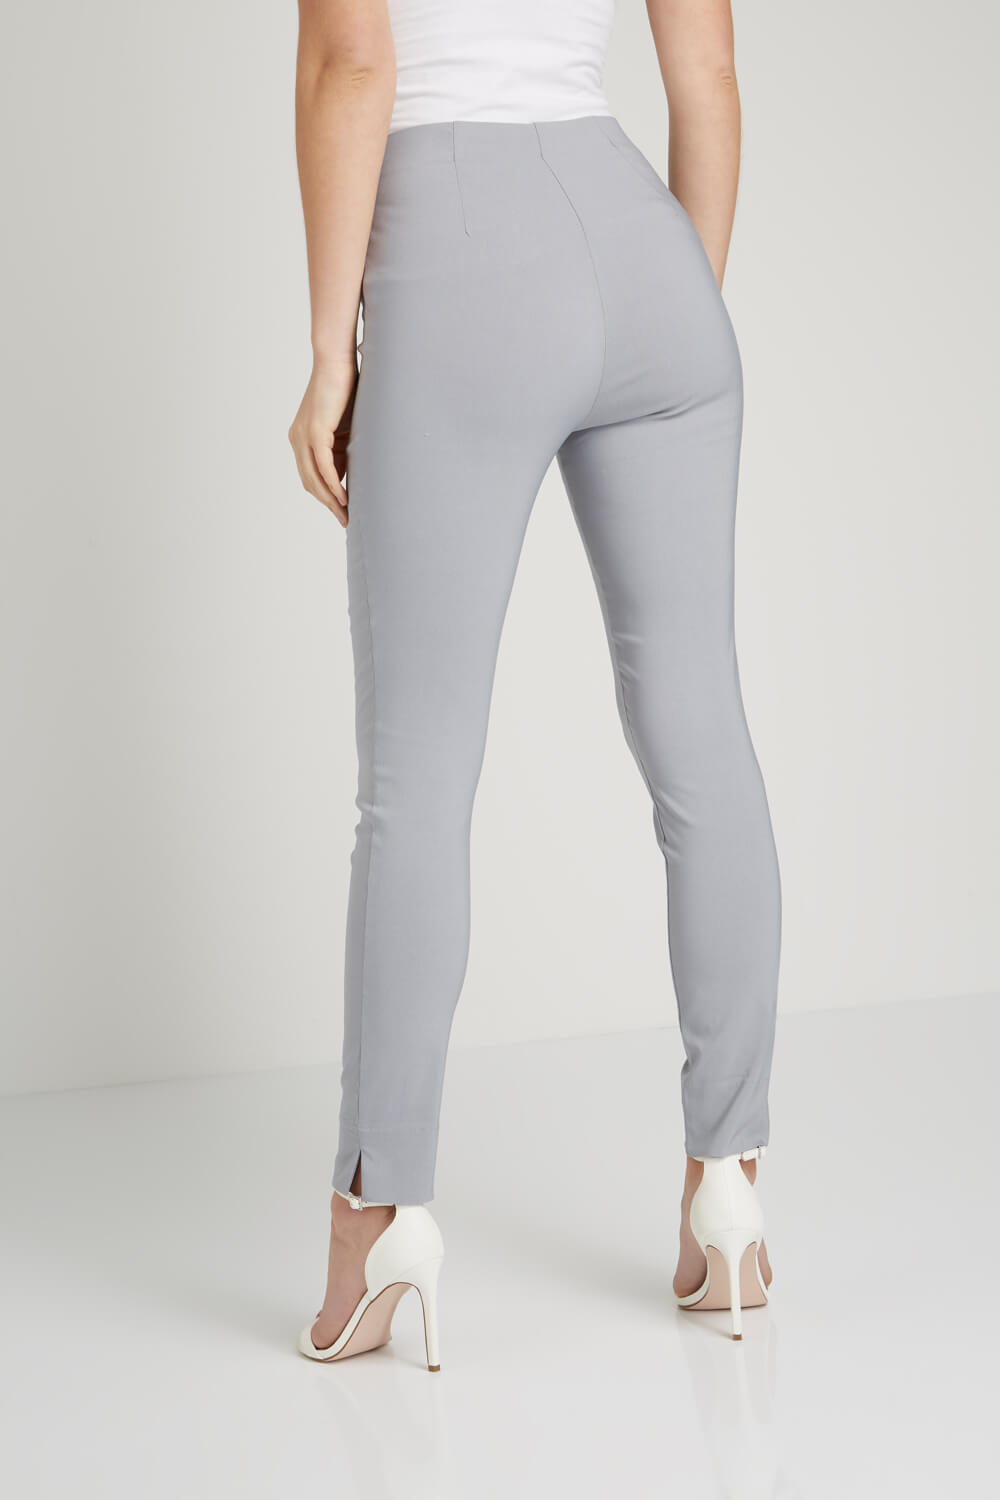 Light Grey Full Length Stretch Trouser, Image 3 of 5